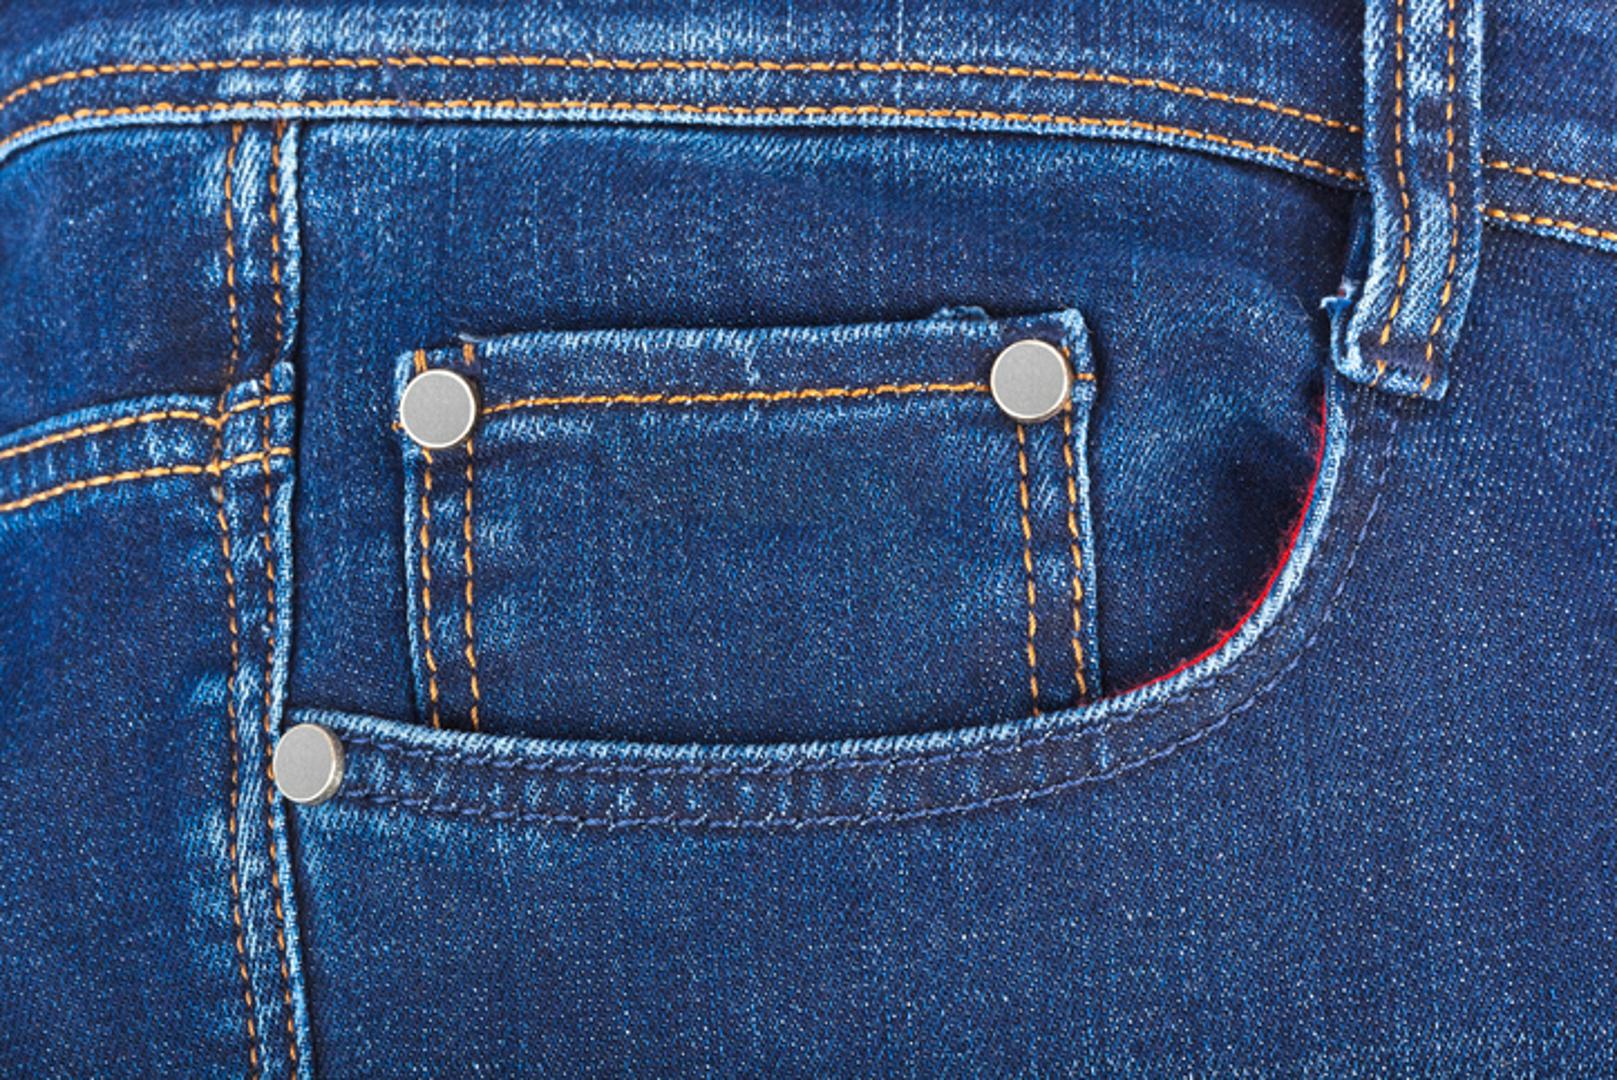 Džepovi na ženskim trapericama su plići i manji nego onim na muškim. I dok muškarci većinom mogu u svoje džepove strpati i ključeve i čak mobitele, kod žena to ide malo teže. 